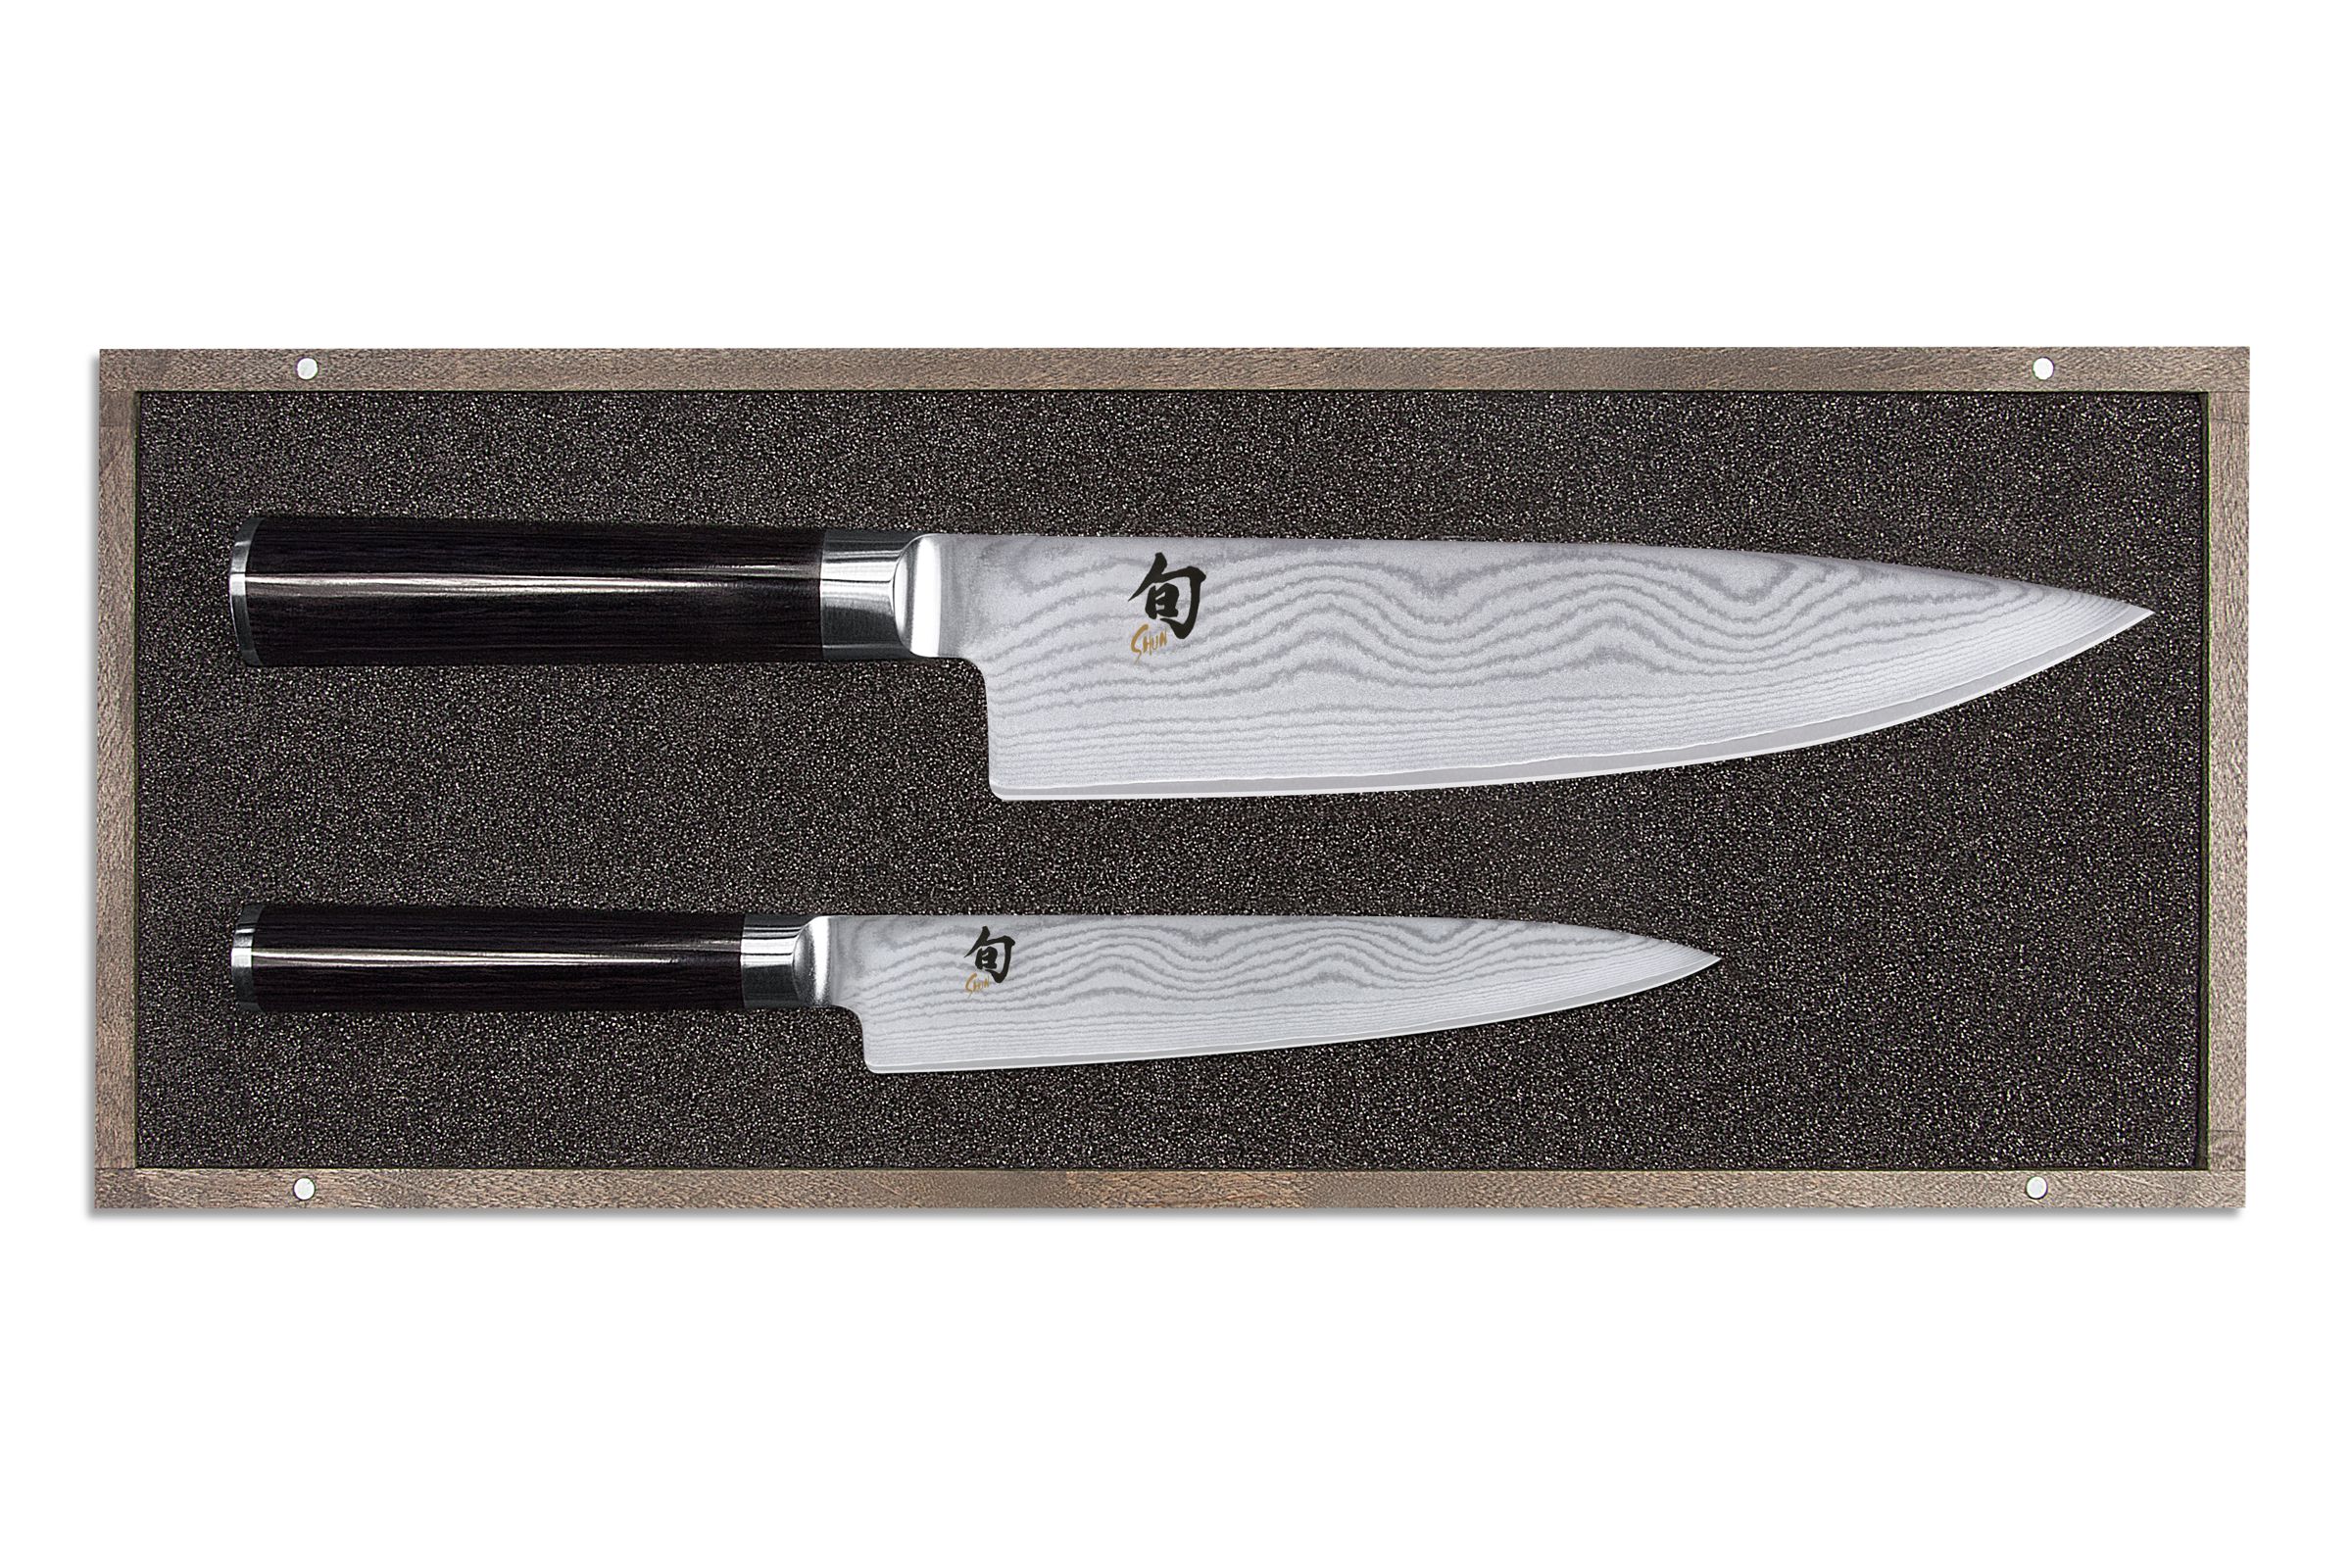 KAI Shun Classic Messer-Set 2-teilig - bestehend aus Kochmesser und Allzweckmesser - Produktansicht